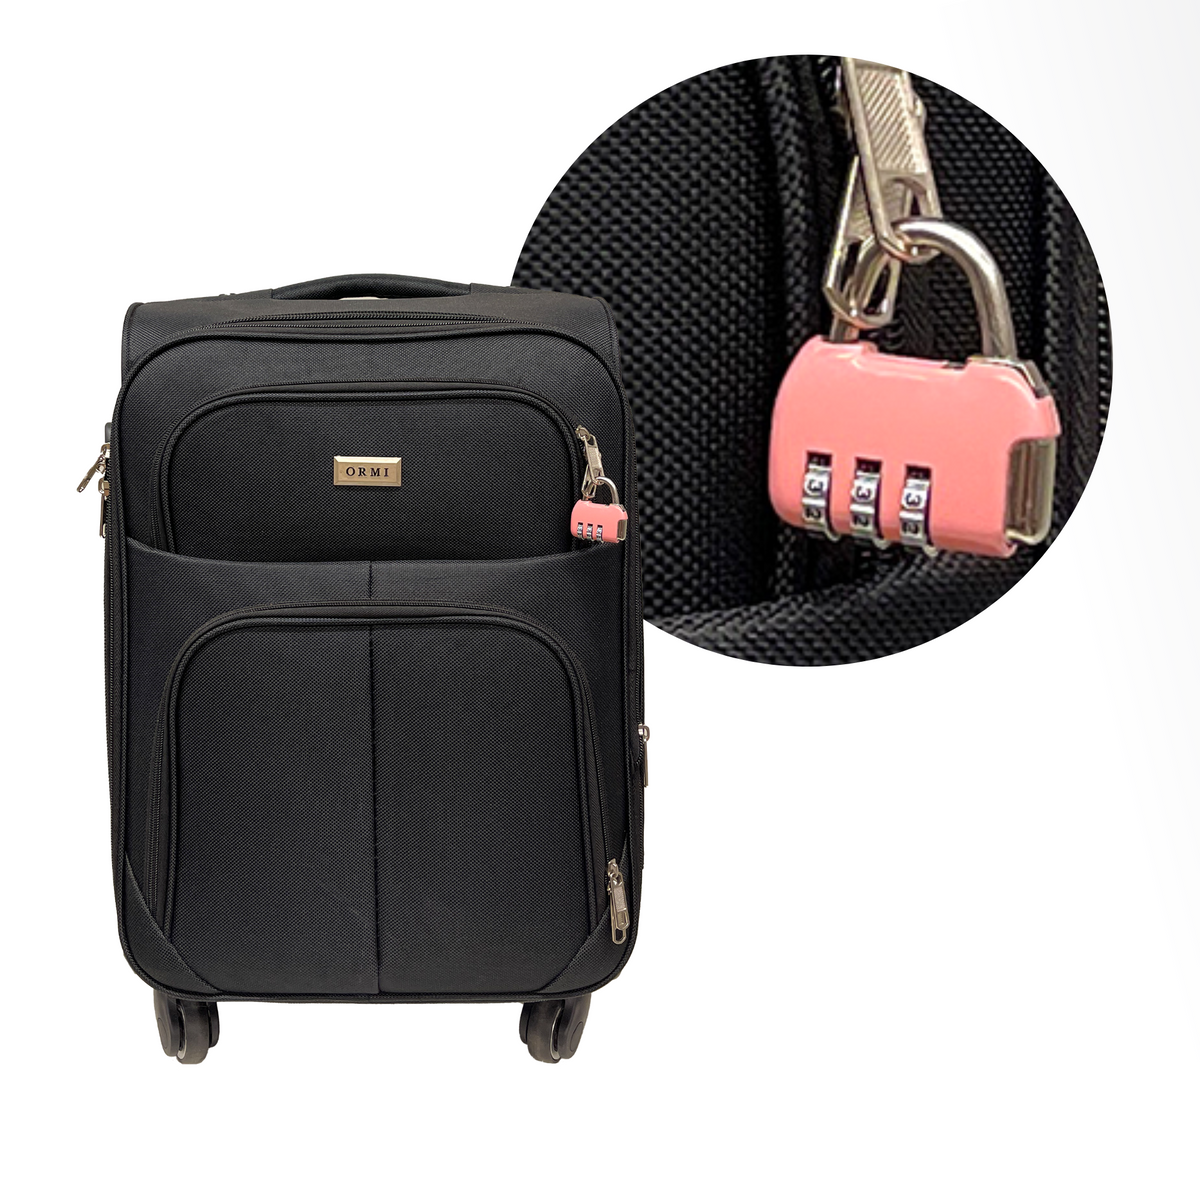 3 számjegyű kombinációs lakat bőröndhöz, poggyászhoz, utazótáskához és hátizsákokhoz